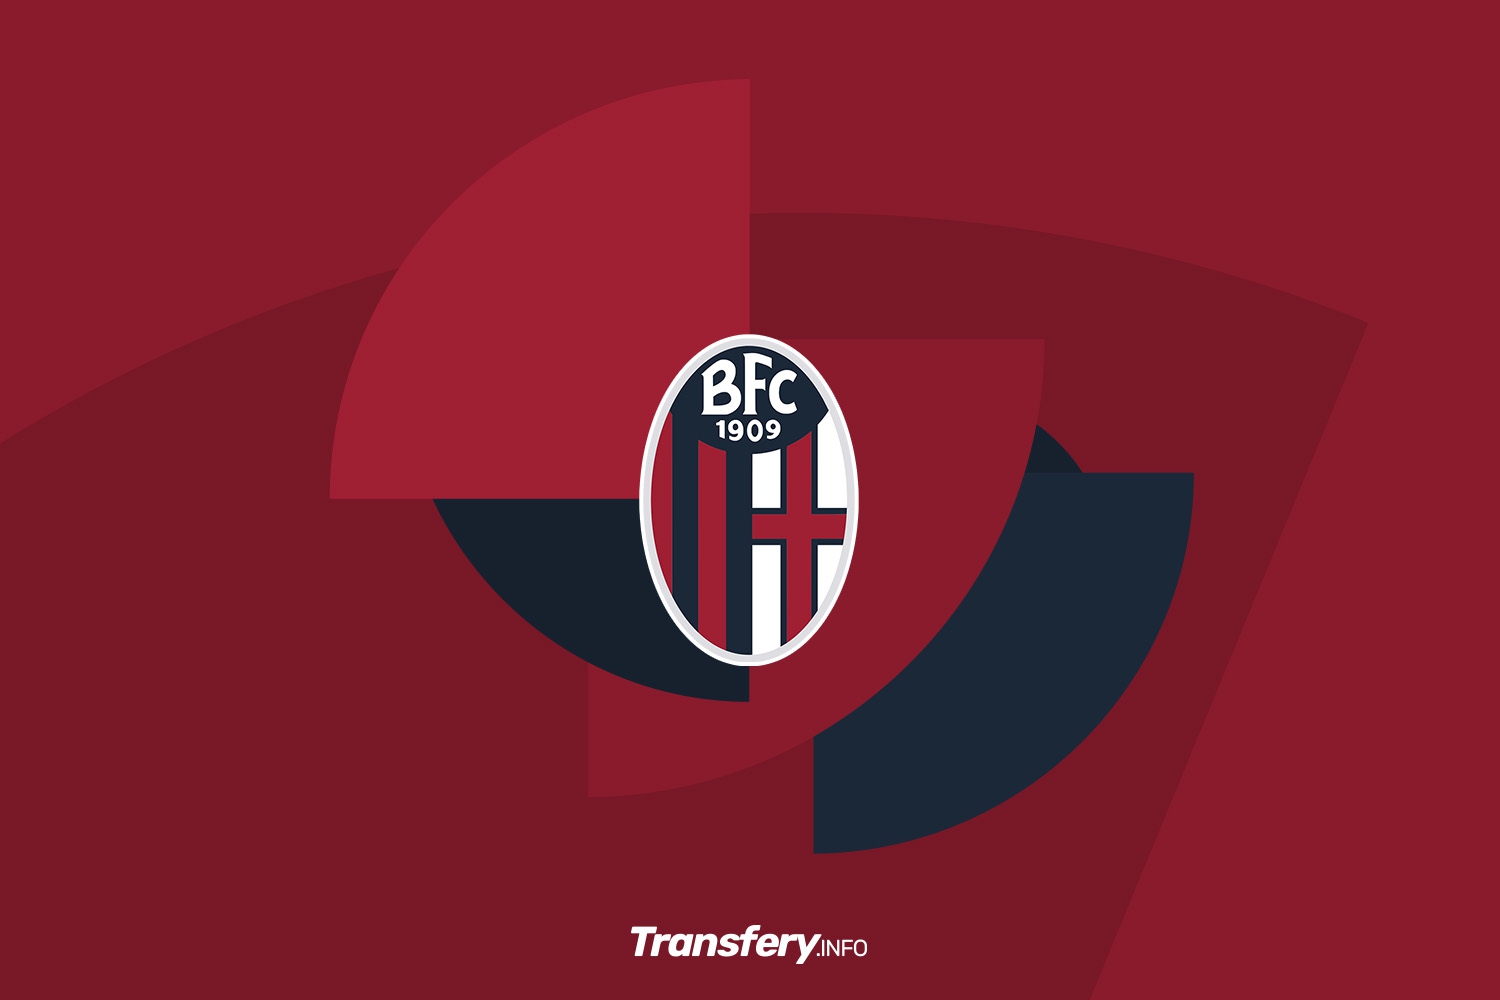 OFICJALNIE: Historyczny sukces. Bologna FC zagra w Lidze Mistrzów